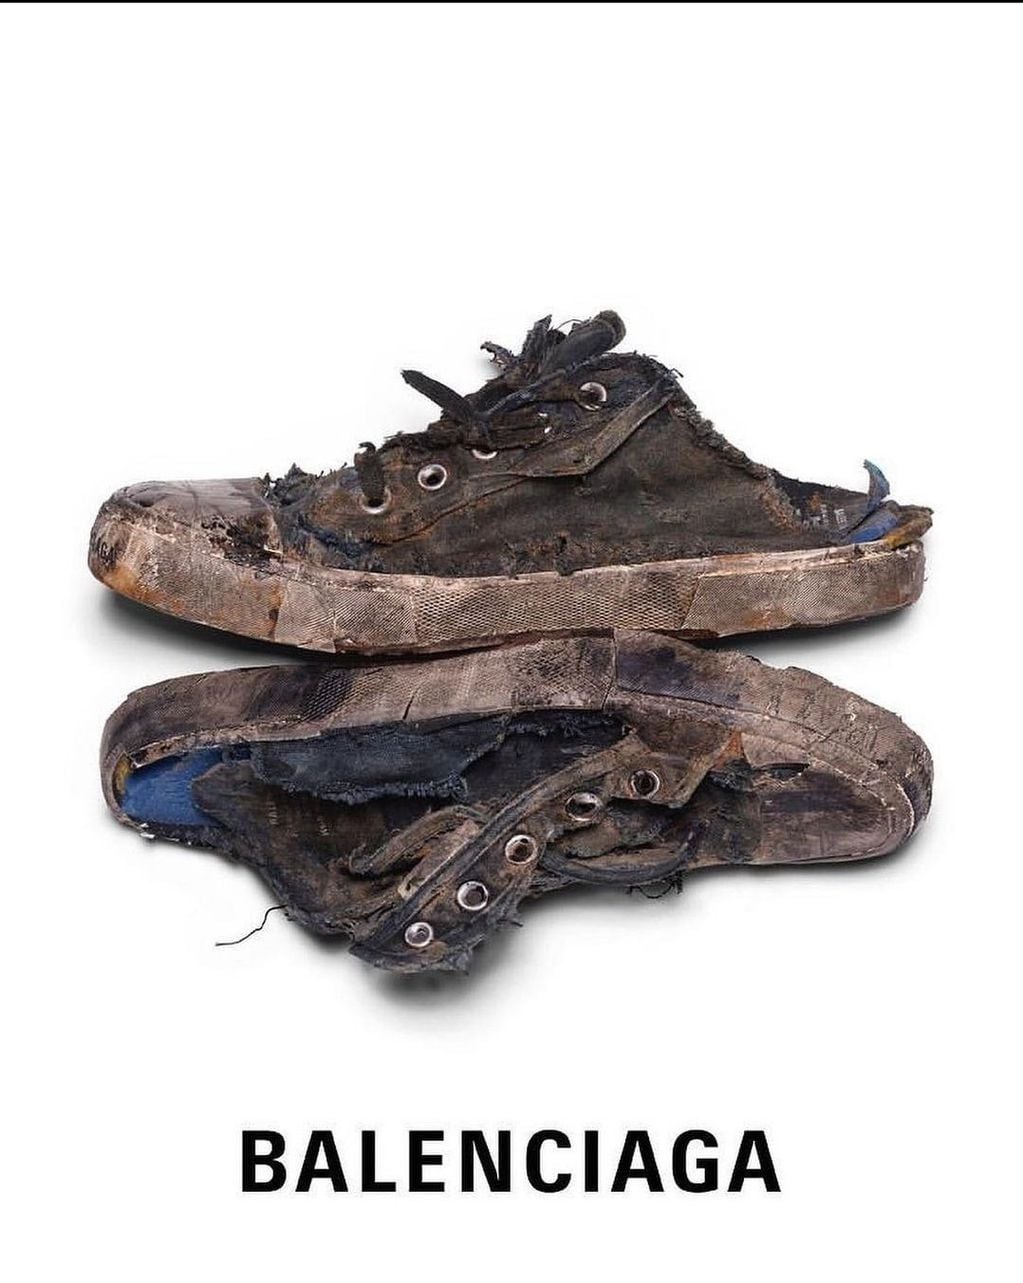 Así son las nuevas zapatillas Balenciaga.